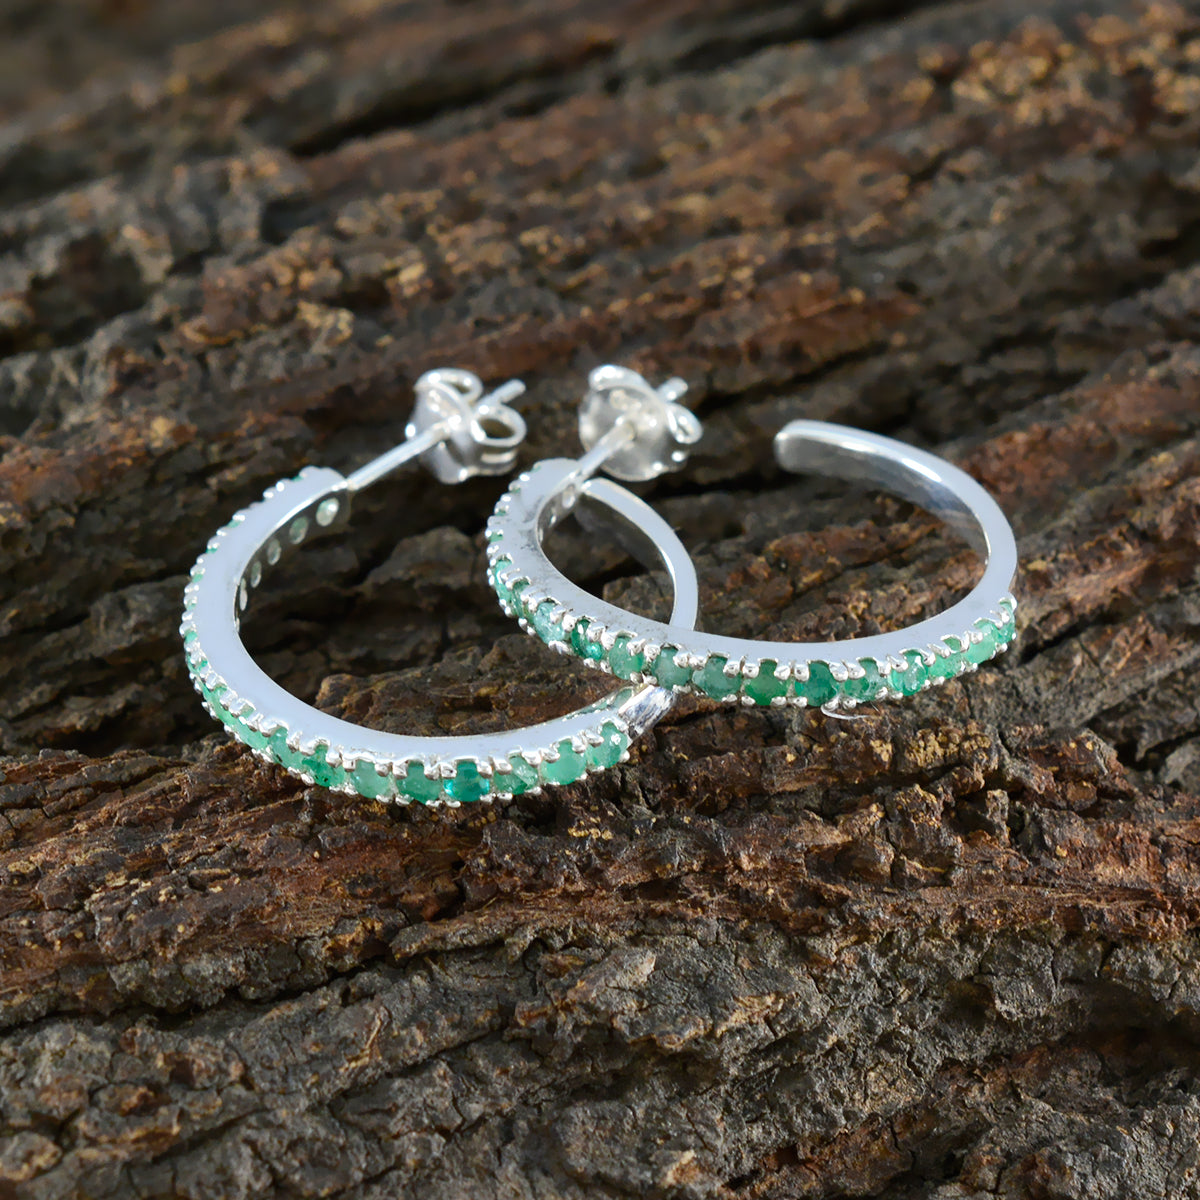 riyo lockande 925 sterling silver örhänge för syster indian smaragd örhänge infattning grön örhänge stift örhänge